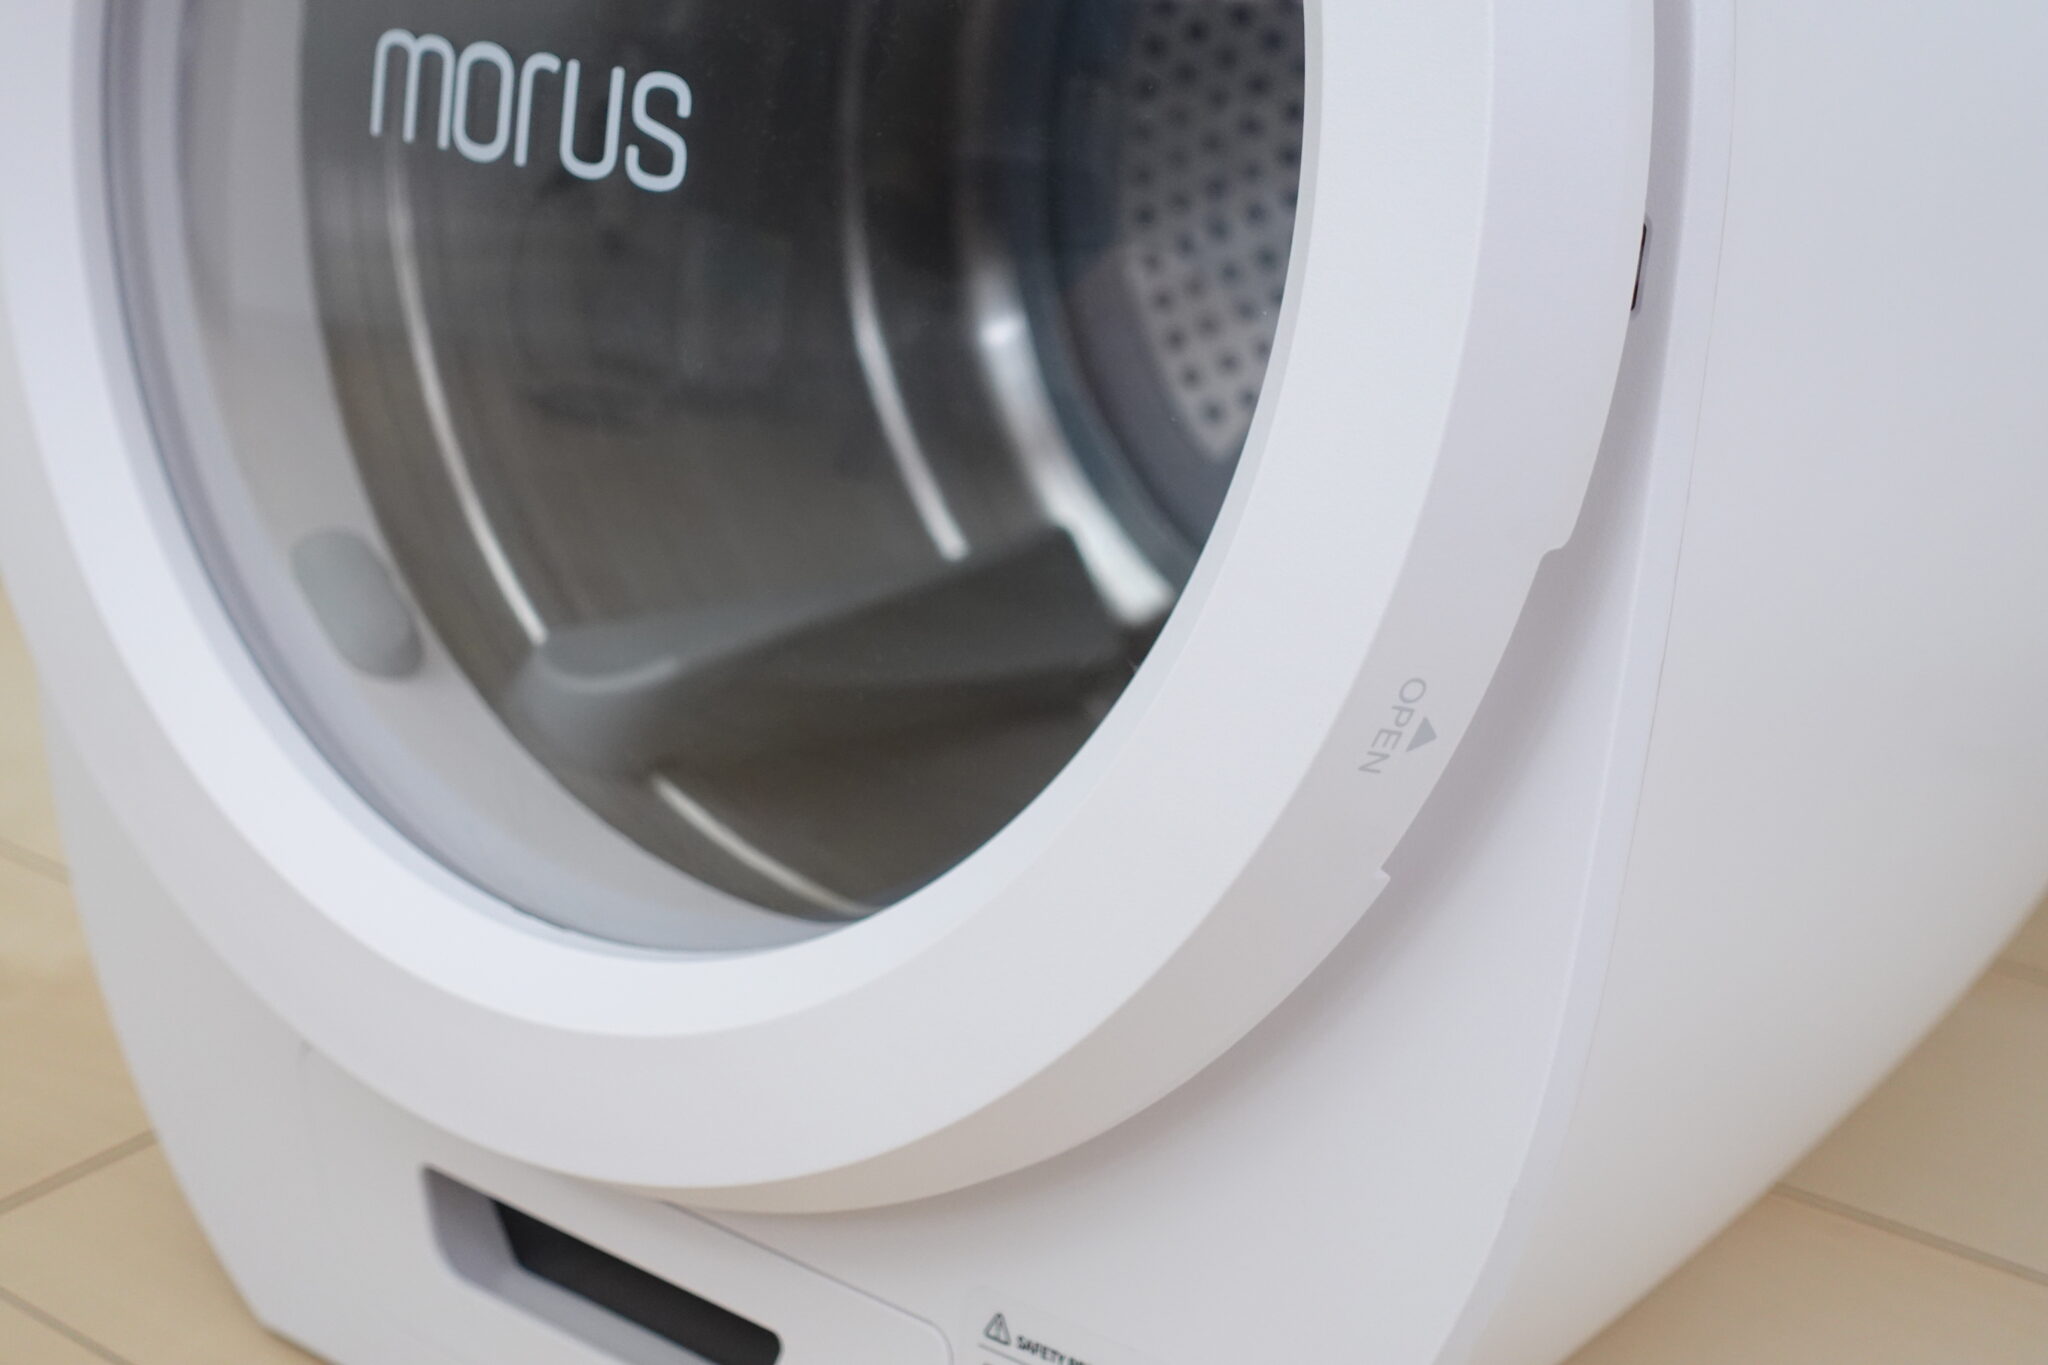 【レビュー】工事不要の超小型衣類乾燥機 フカフカの仕上がりが最高の「Morus Zero」 | 最新ガジェットレビューブログ ドローン・最新